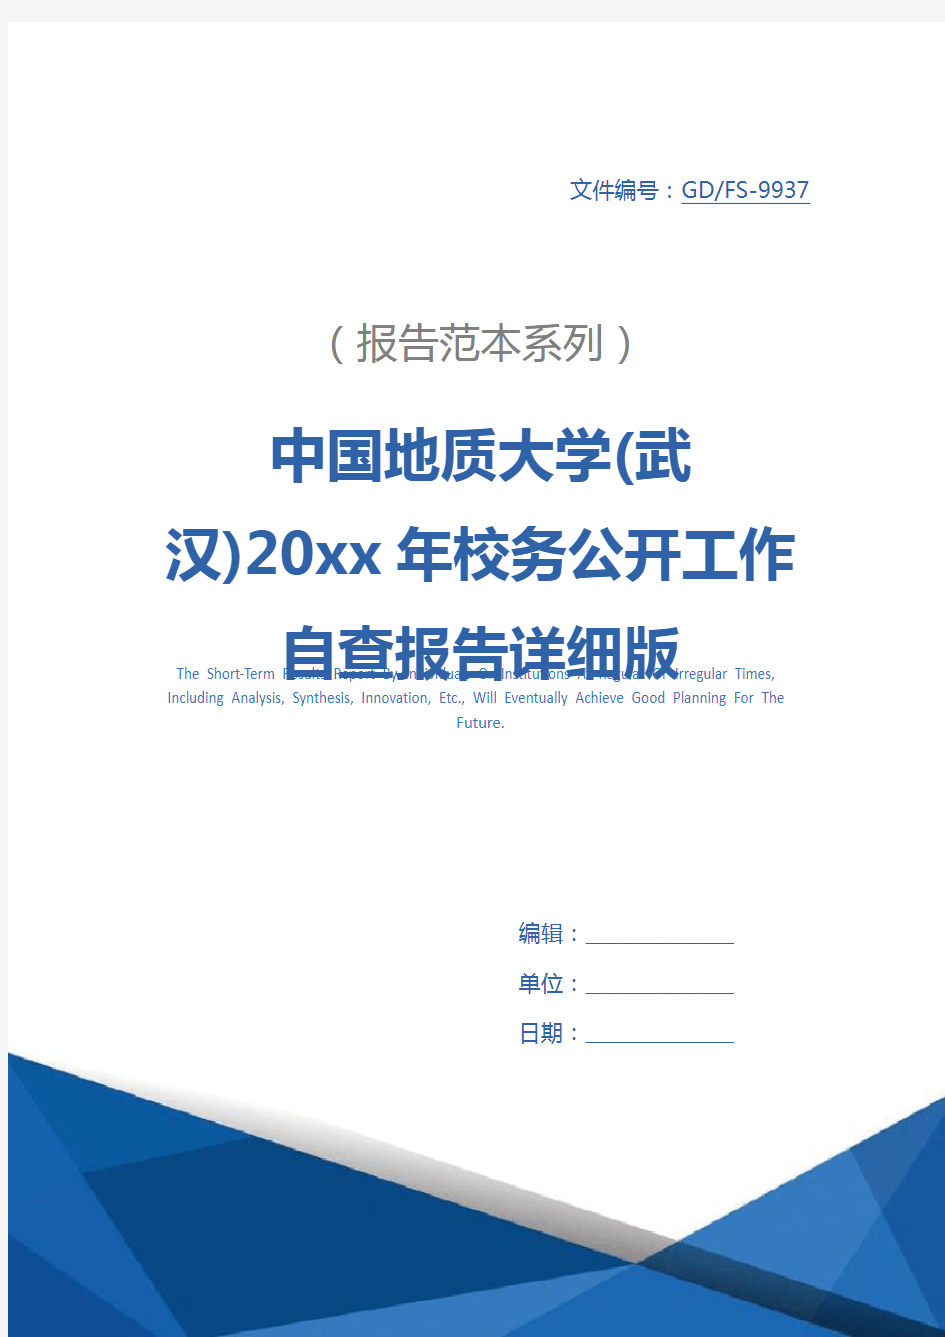 中国地质大学(武汉)20xx年校务公开工作自查报告详细版